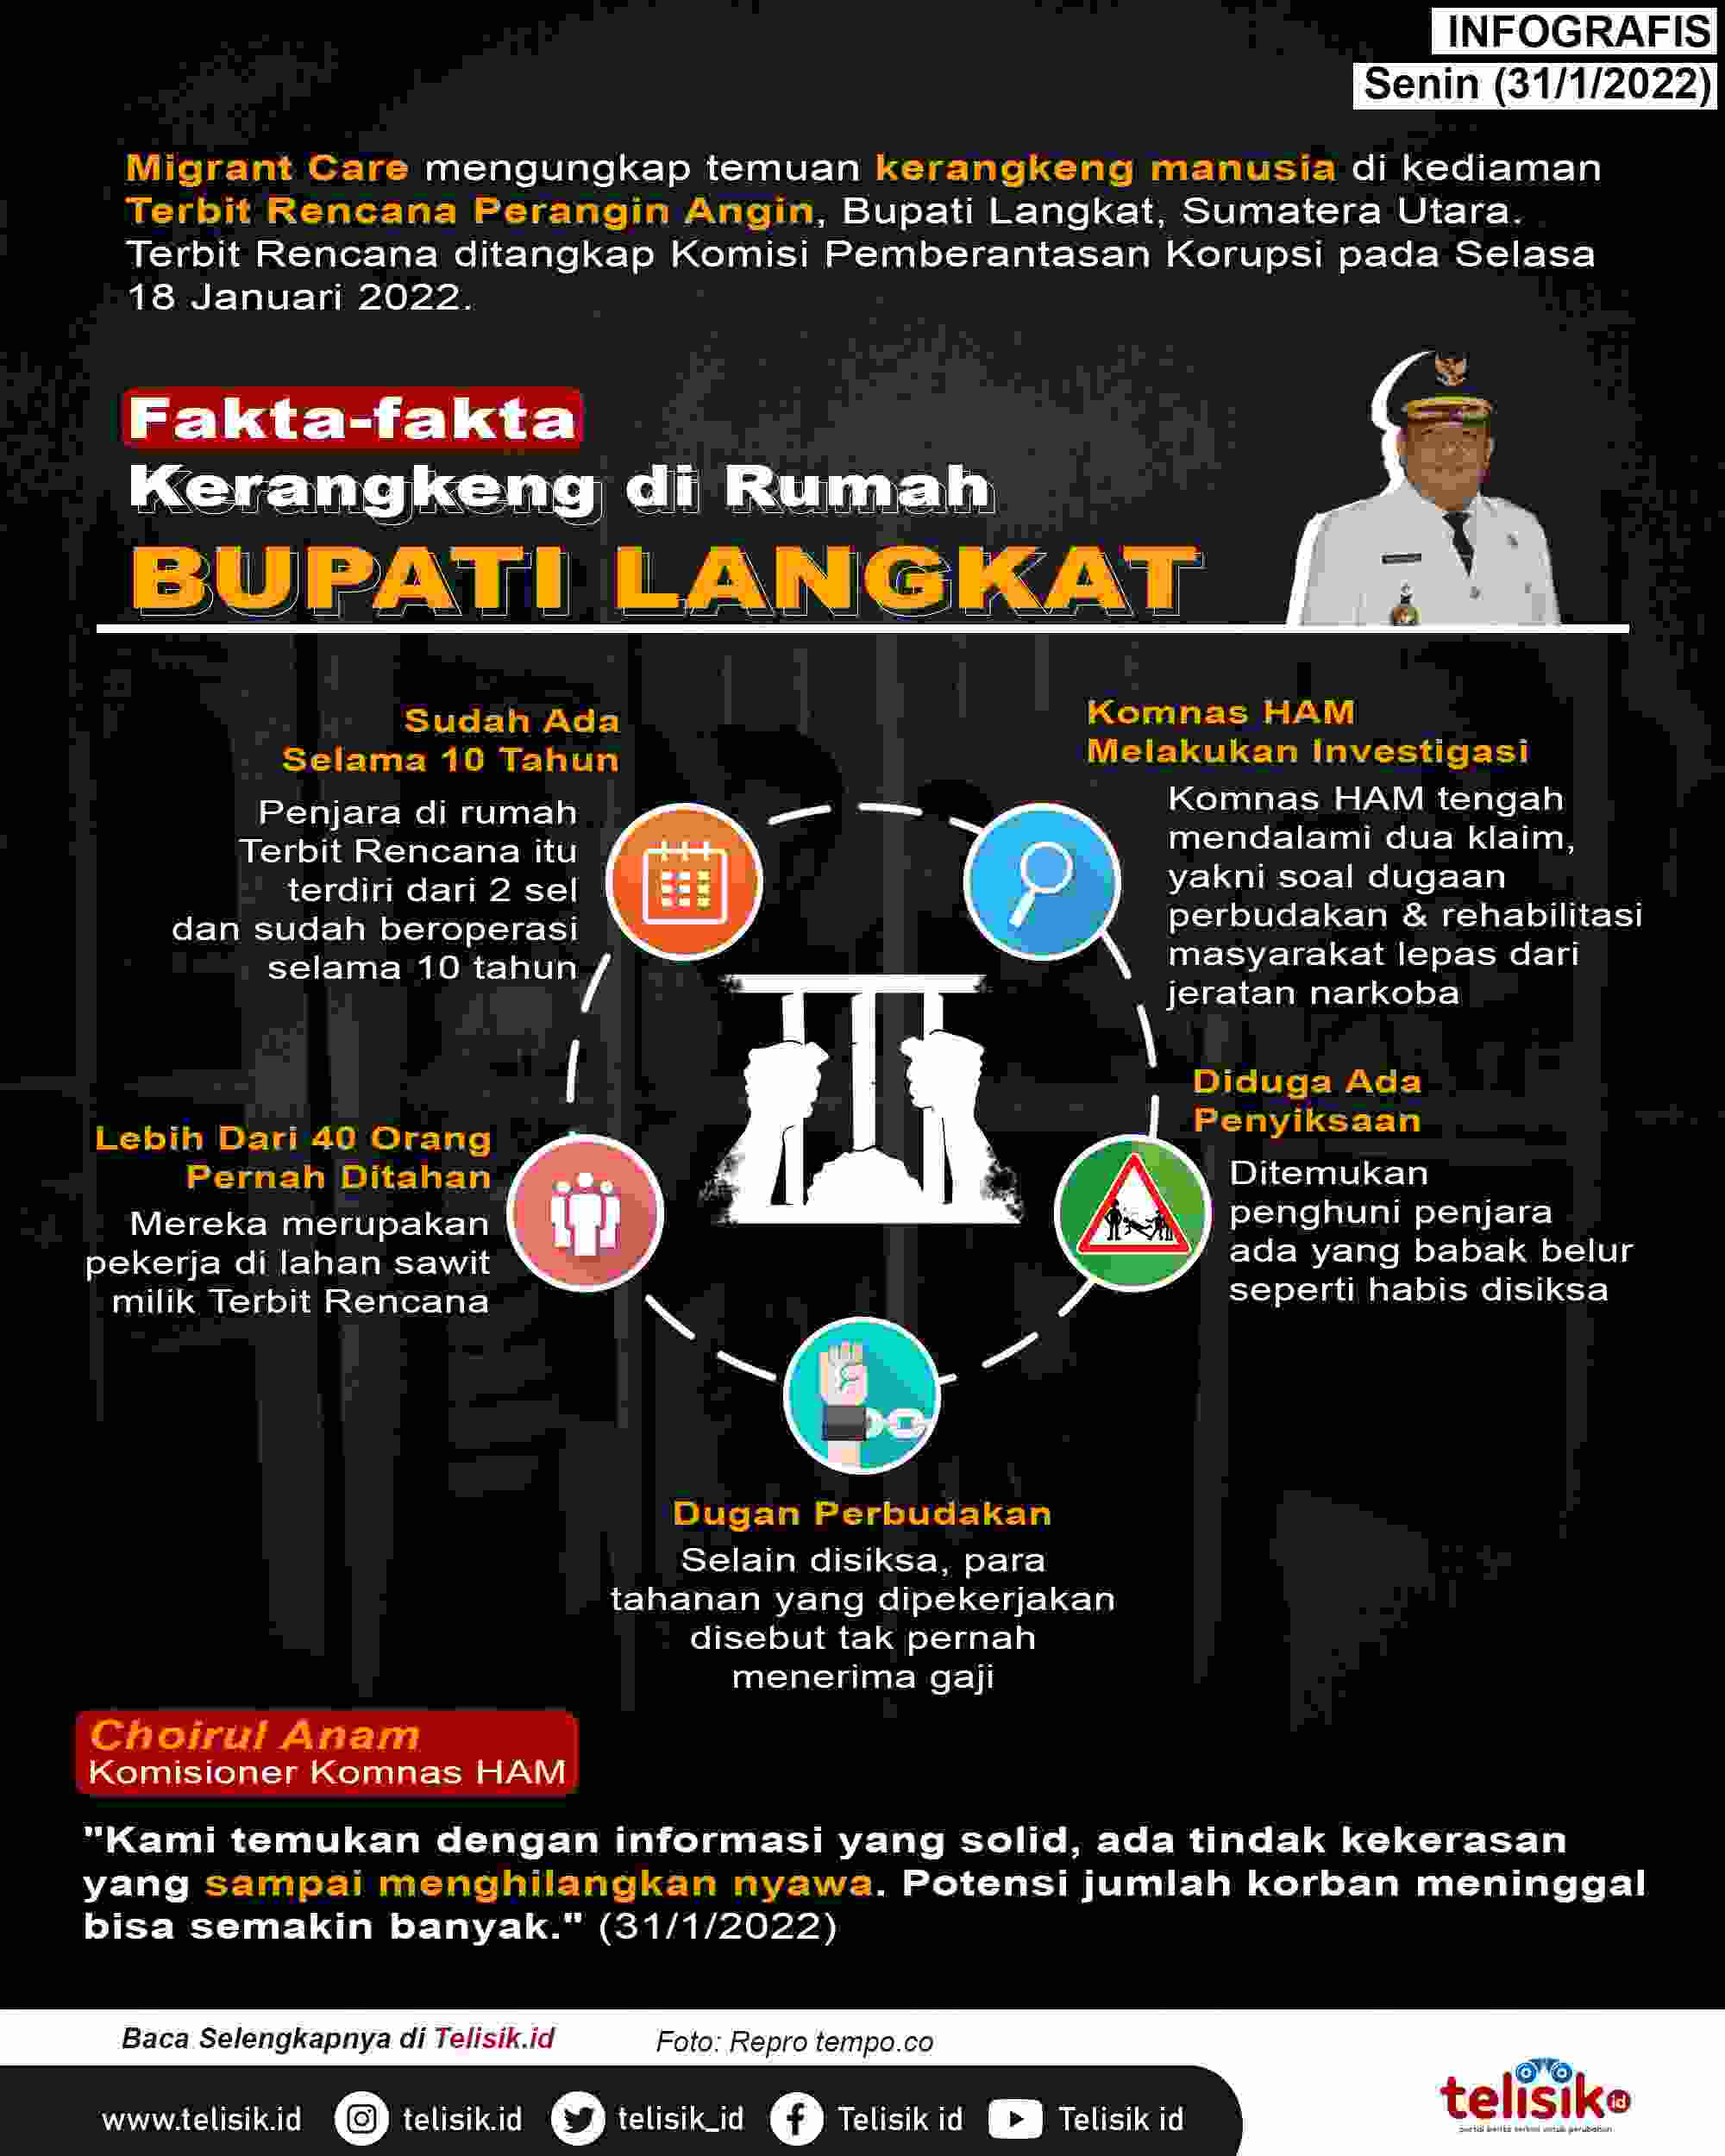 Infografis: Fakta-fakta Kerangkeng di Rumah Bupati Langkat